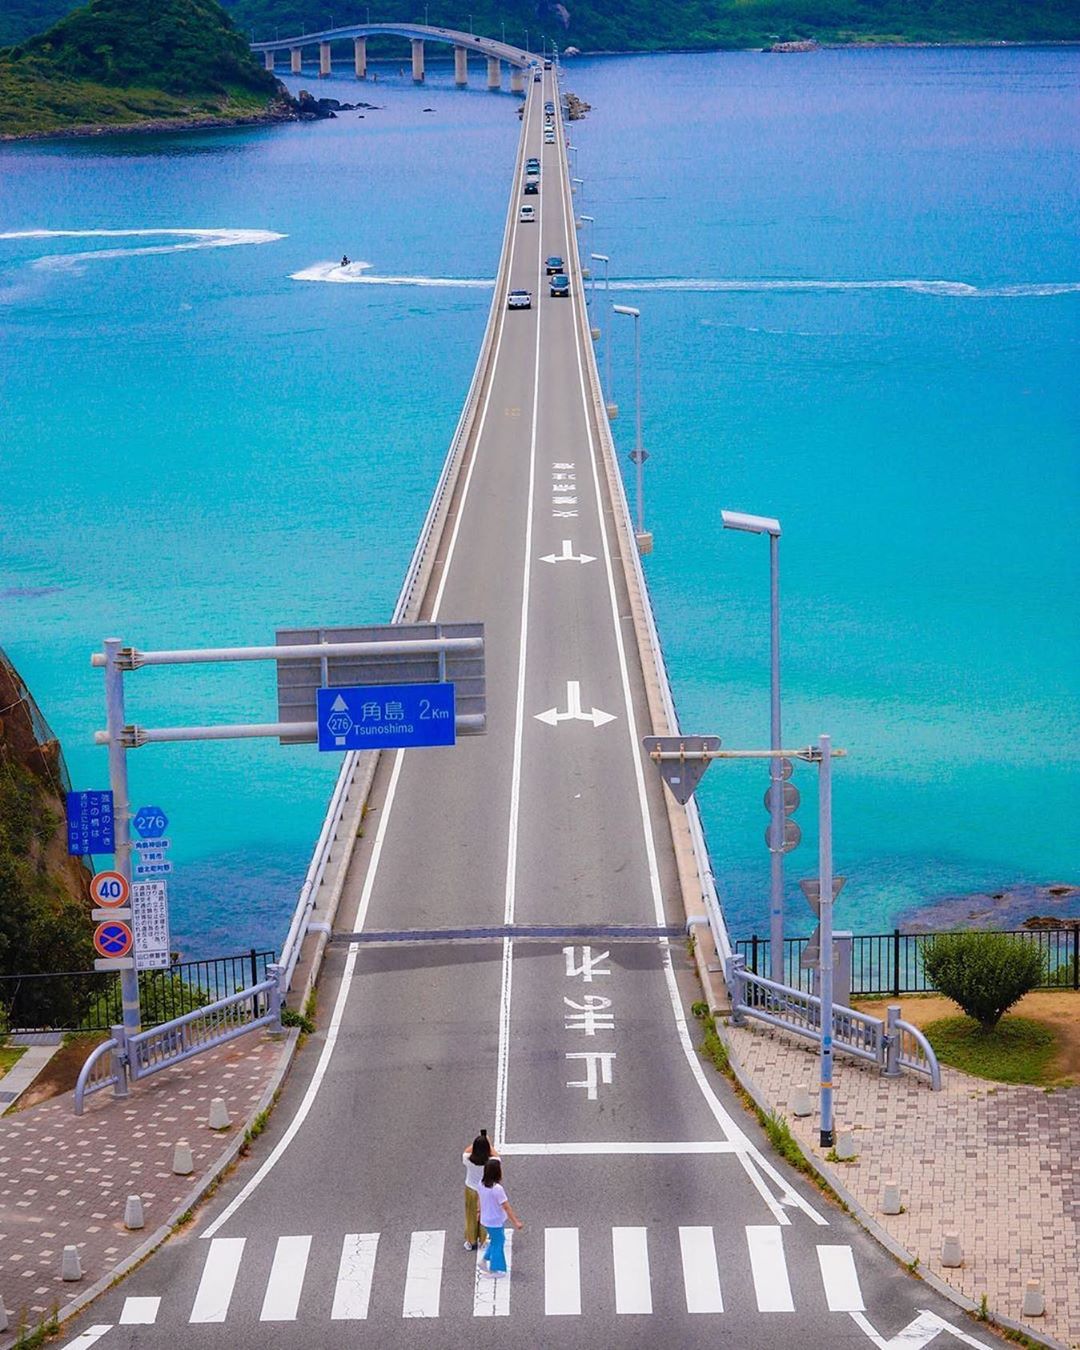 Retrip News Retrip 山口 山口県下関市の 角島大橋 は 本土と角島を結ぶ全長1 780mの橋です 真っ直ぐ伸びる橋の両脇にはエメラルドグリーンの海が広がり 絶景を Wacoca Japan People Life Style